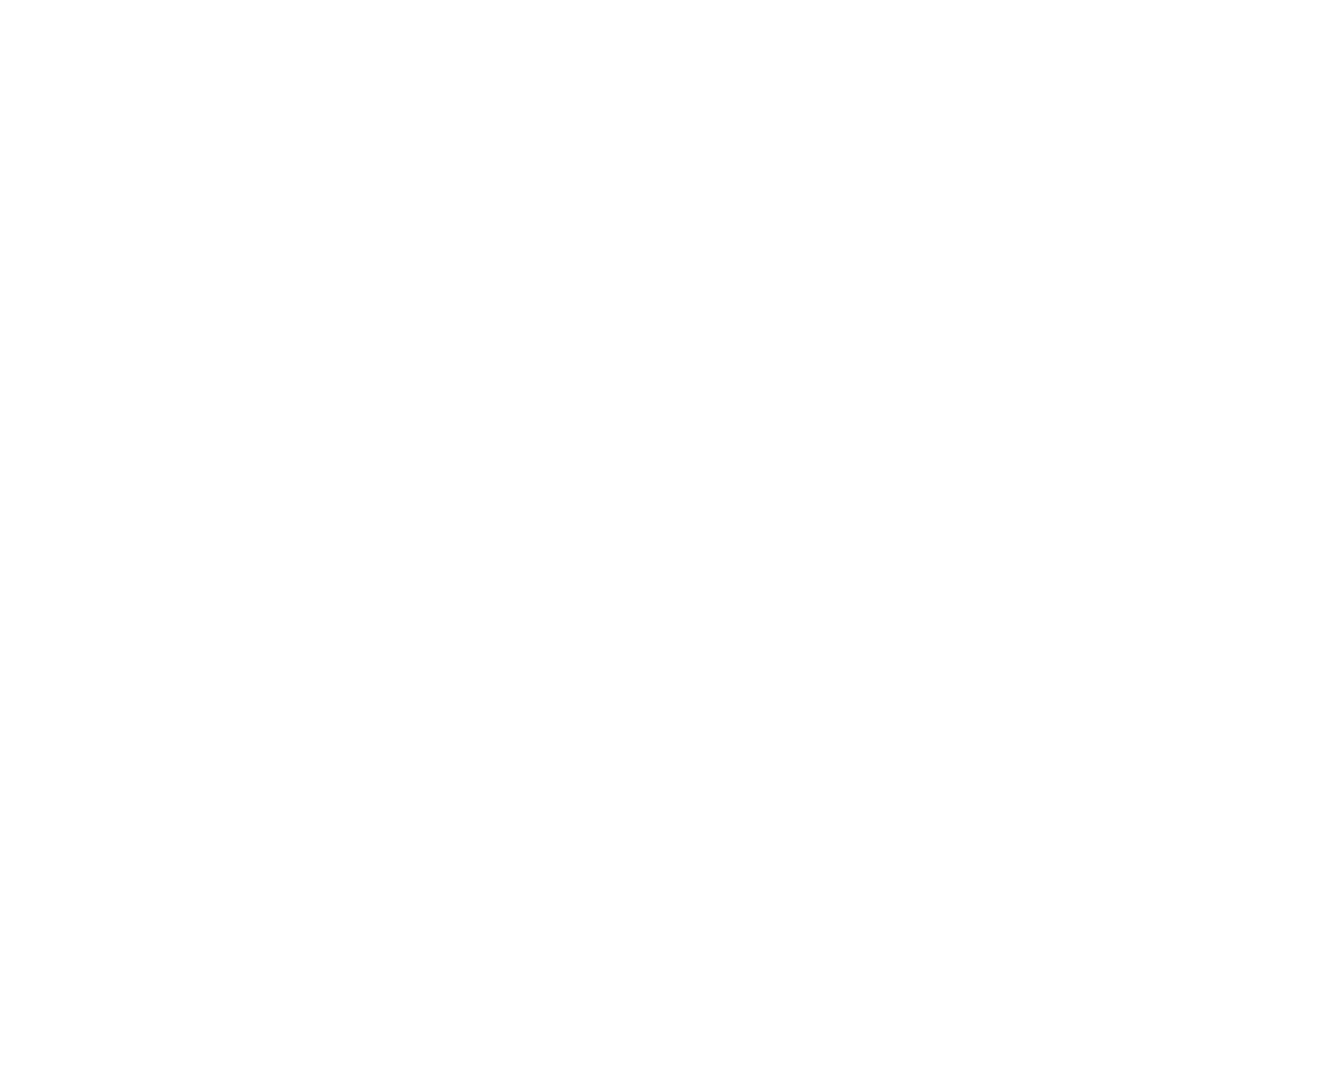 Olisson Club